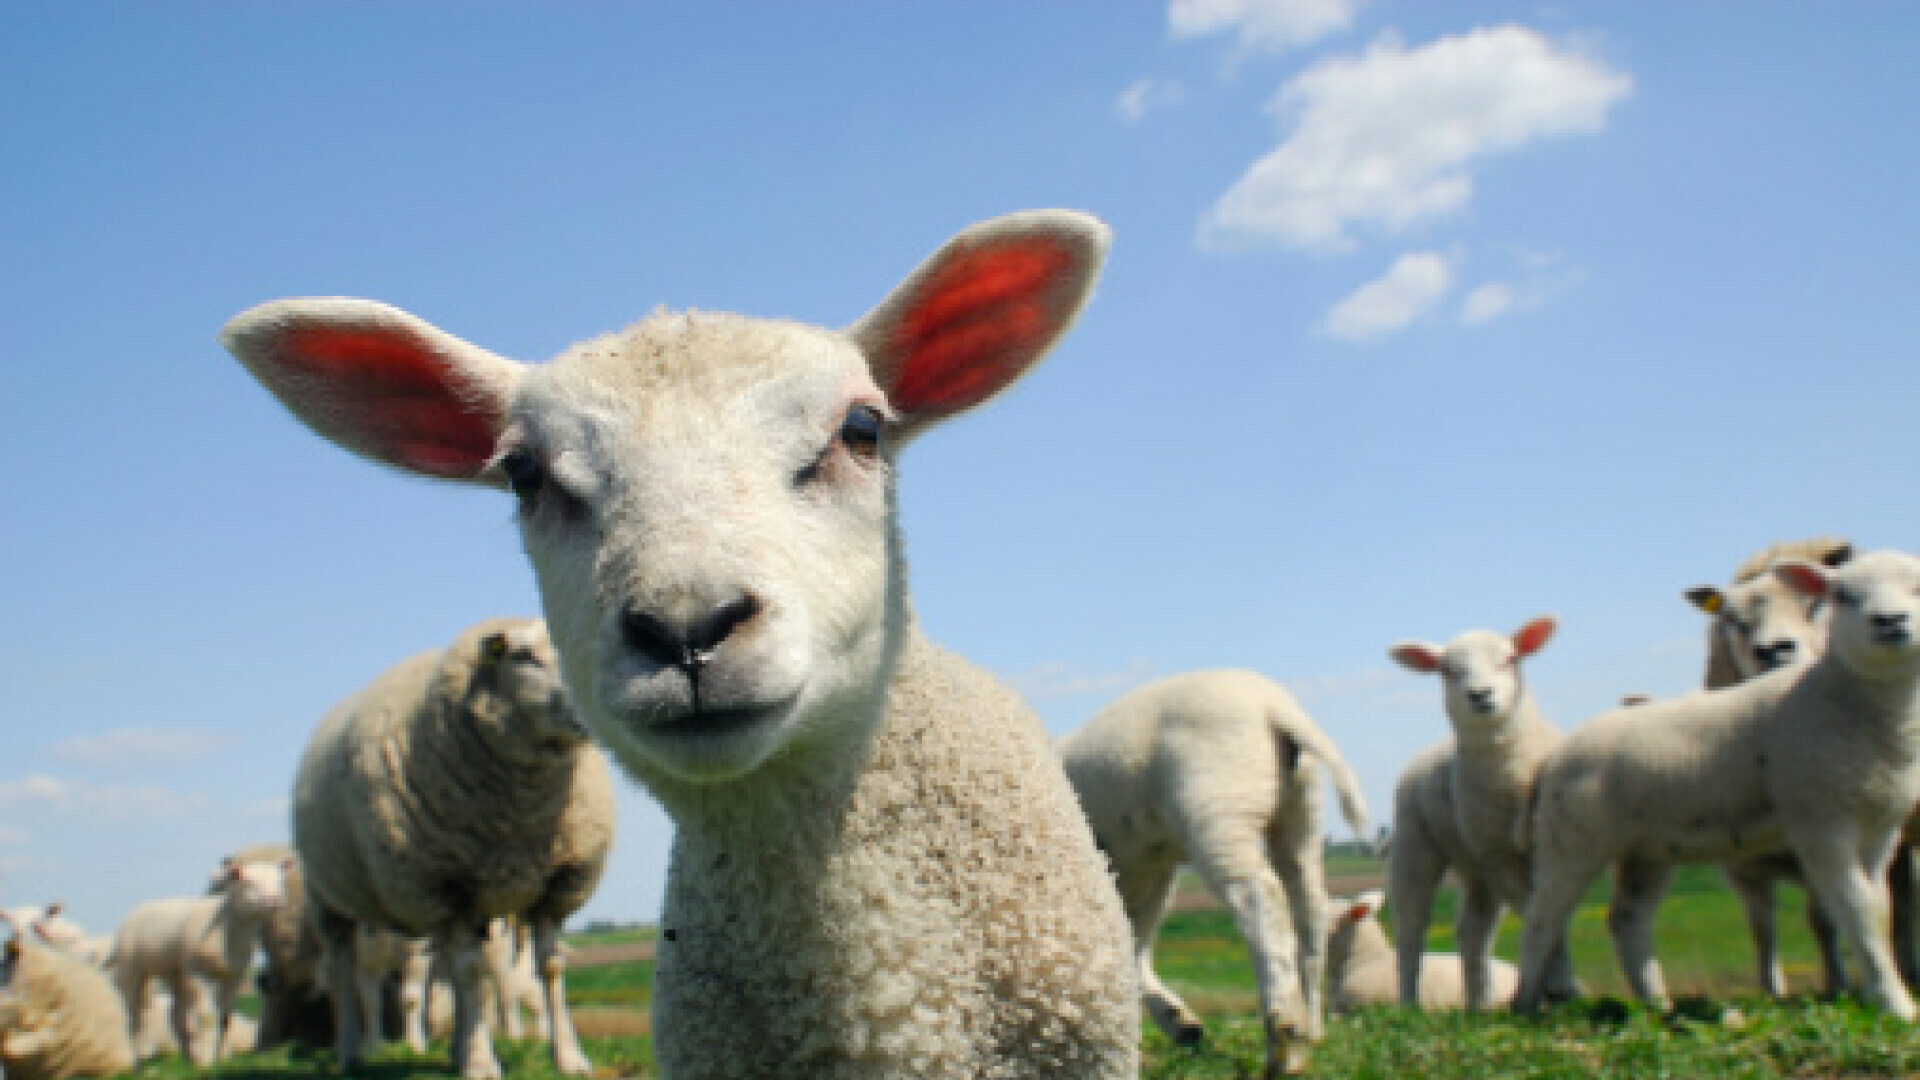 Ovce tražile travu, pa pojele 100 kilograma kanabisa: Pastir je primijetio čudno ponašanje stada